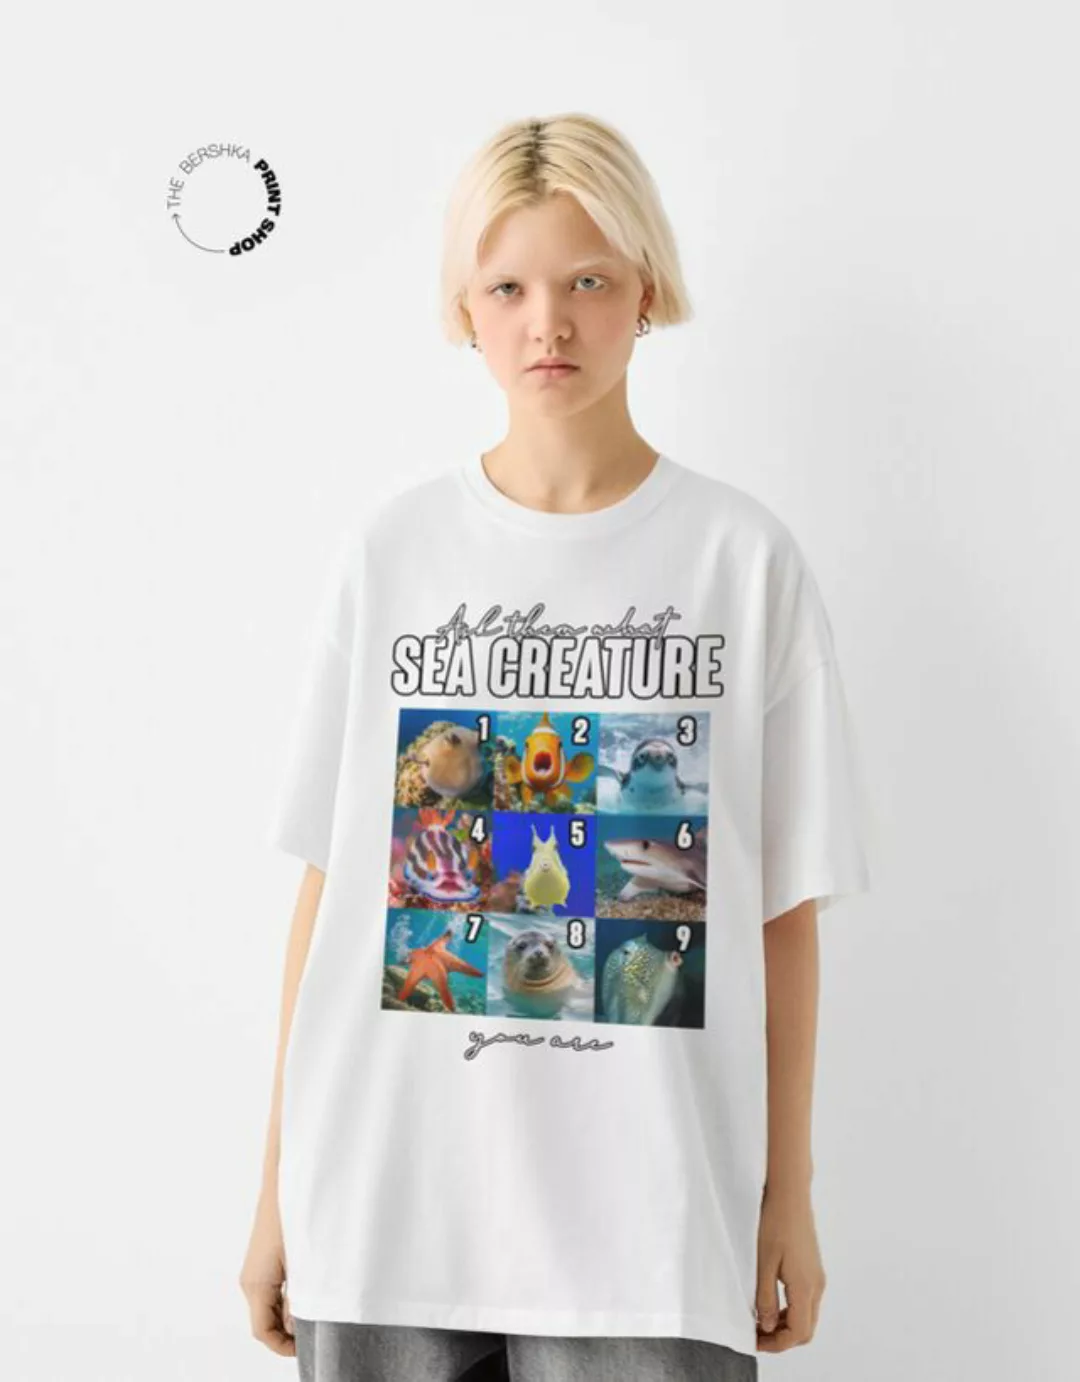 Bershka Oversize-T-Shirt Mit Print Damen Xs Grbrochenes Weiss günstig online kaufen